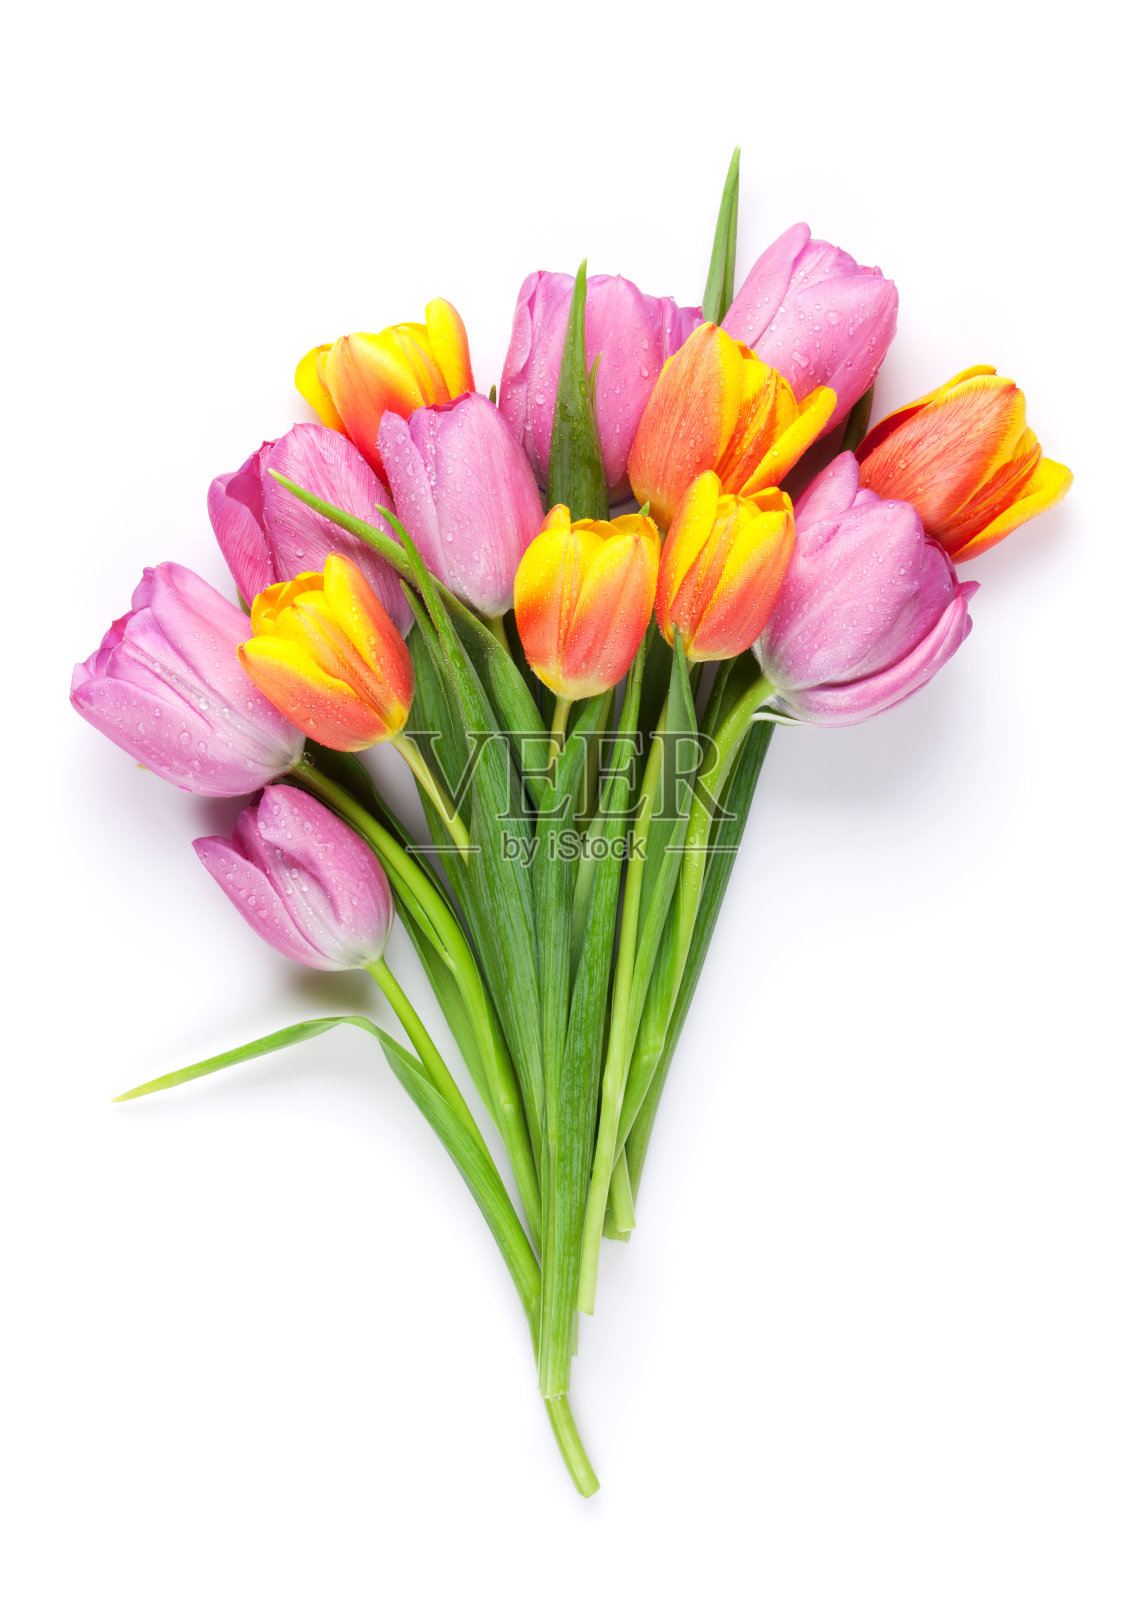 鲜艳鲜艳的郁金香花束照片摄影图片